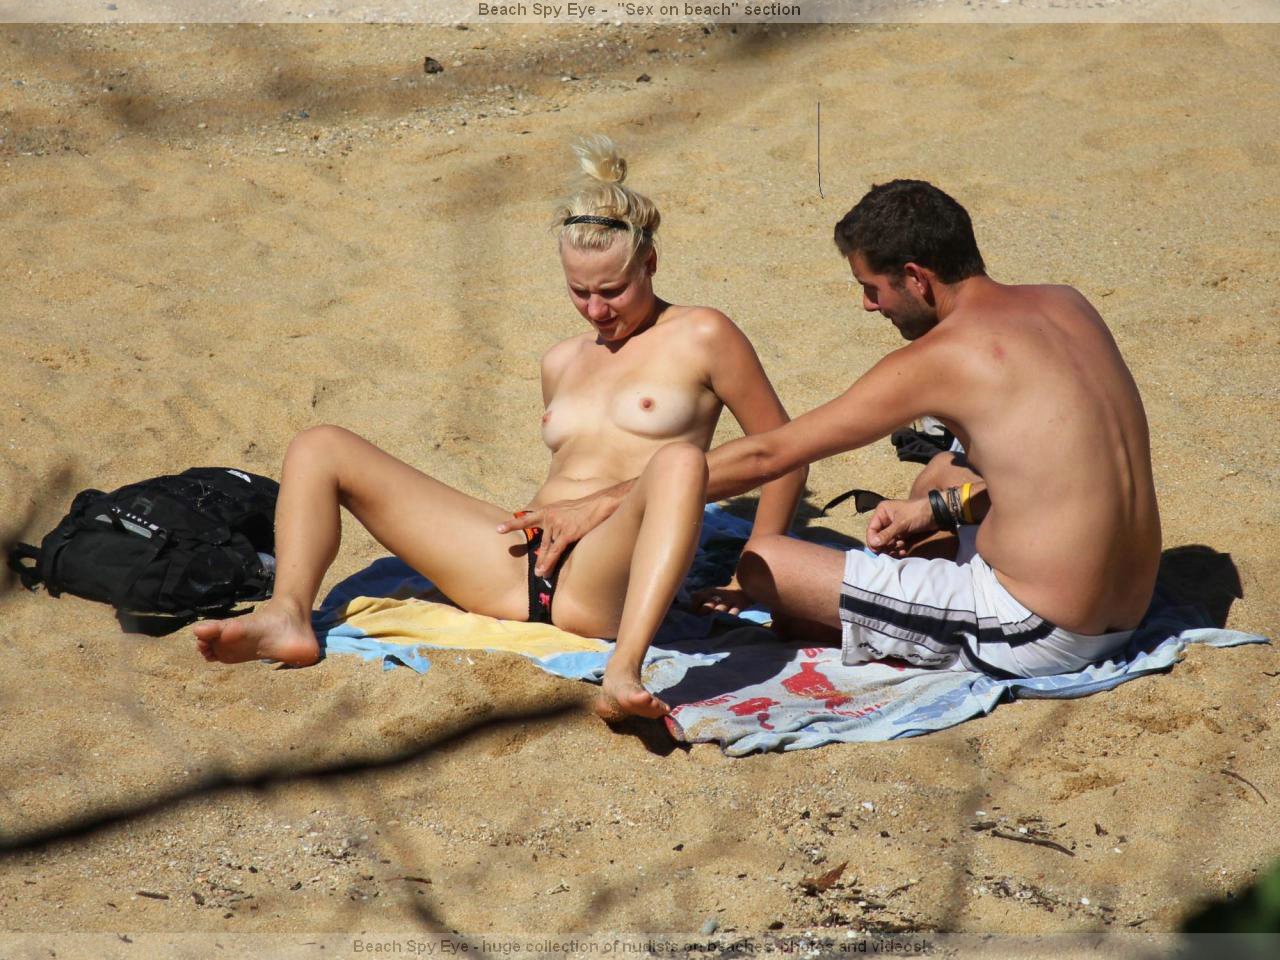 https://pbs.bulkjerk.com/39/3926/pictures/4045-6-voyeur-beach-sex.jpg